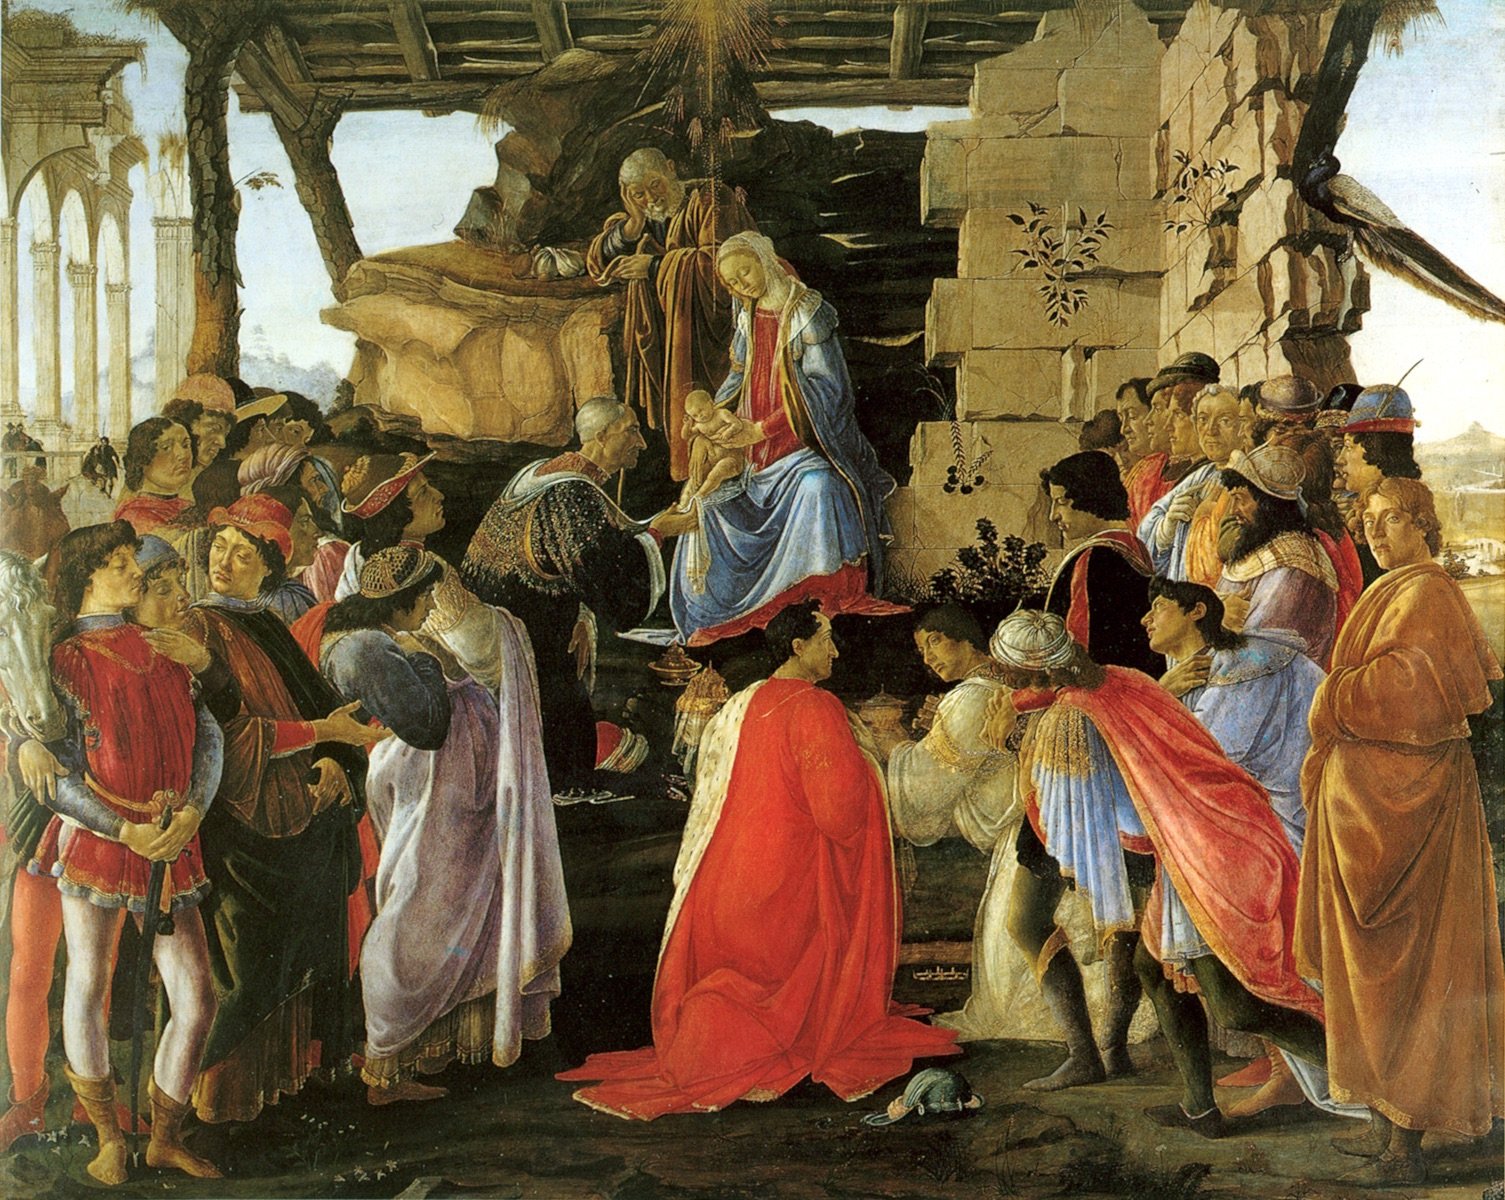 Sandro Botticelli, Adoration of the Magi (1476; tempera on panel, 111 x 134 cm; Uffizi Galleries, inv. 1890 no. 882)